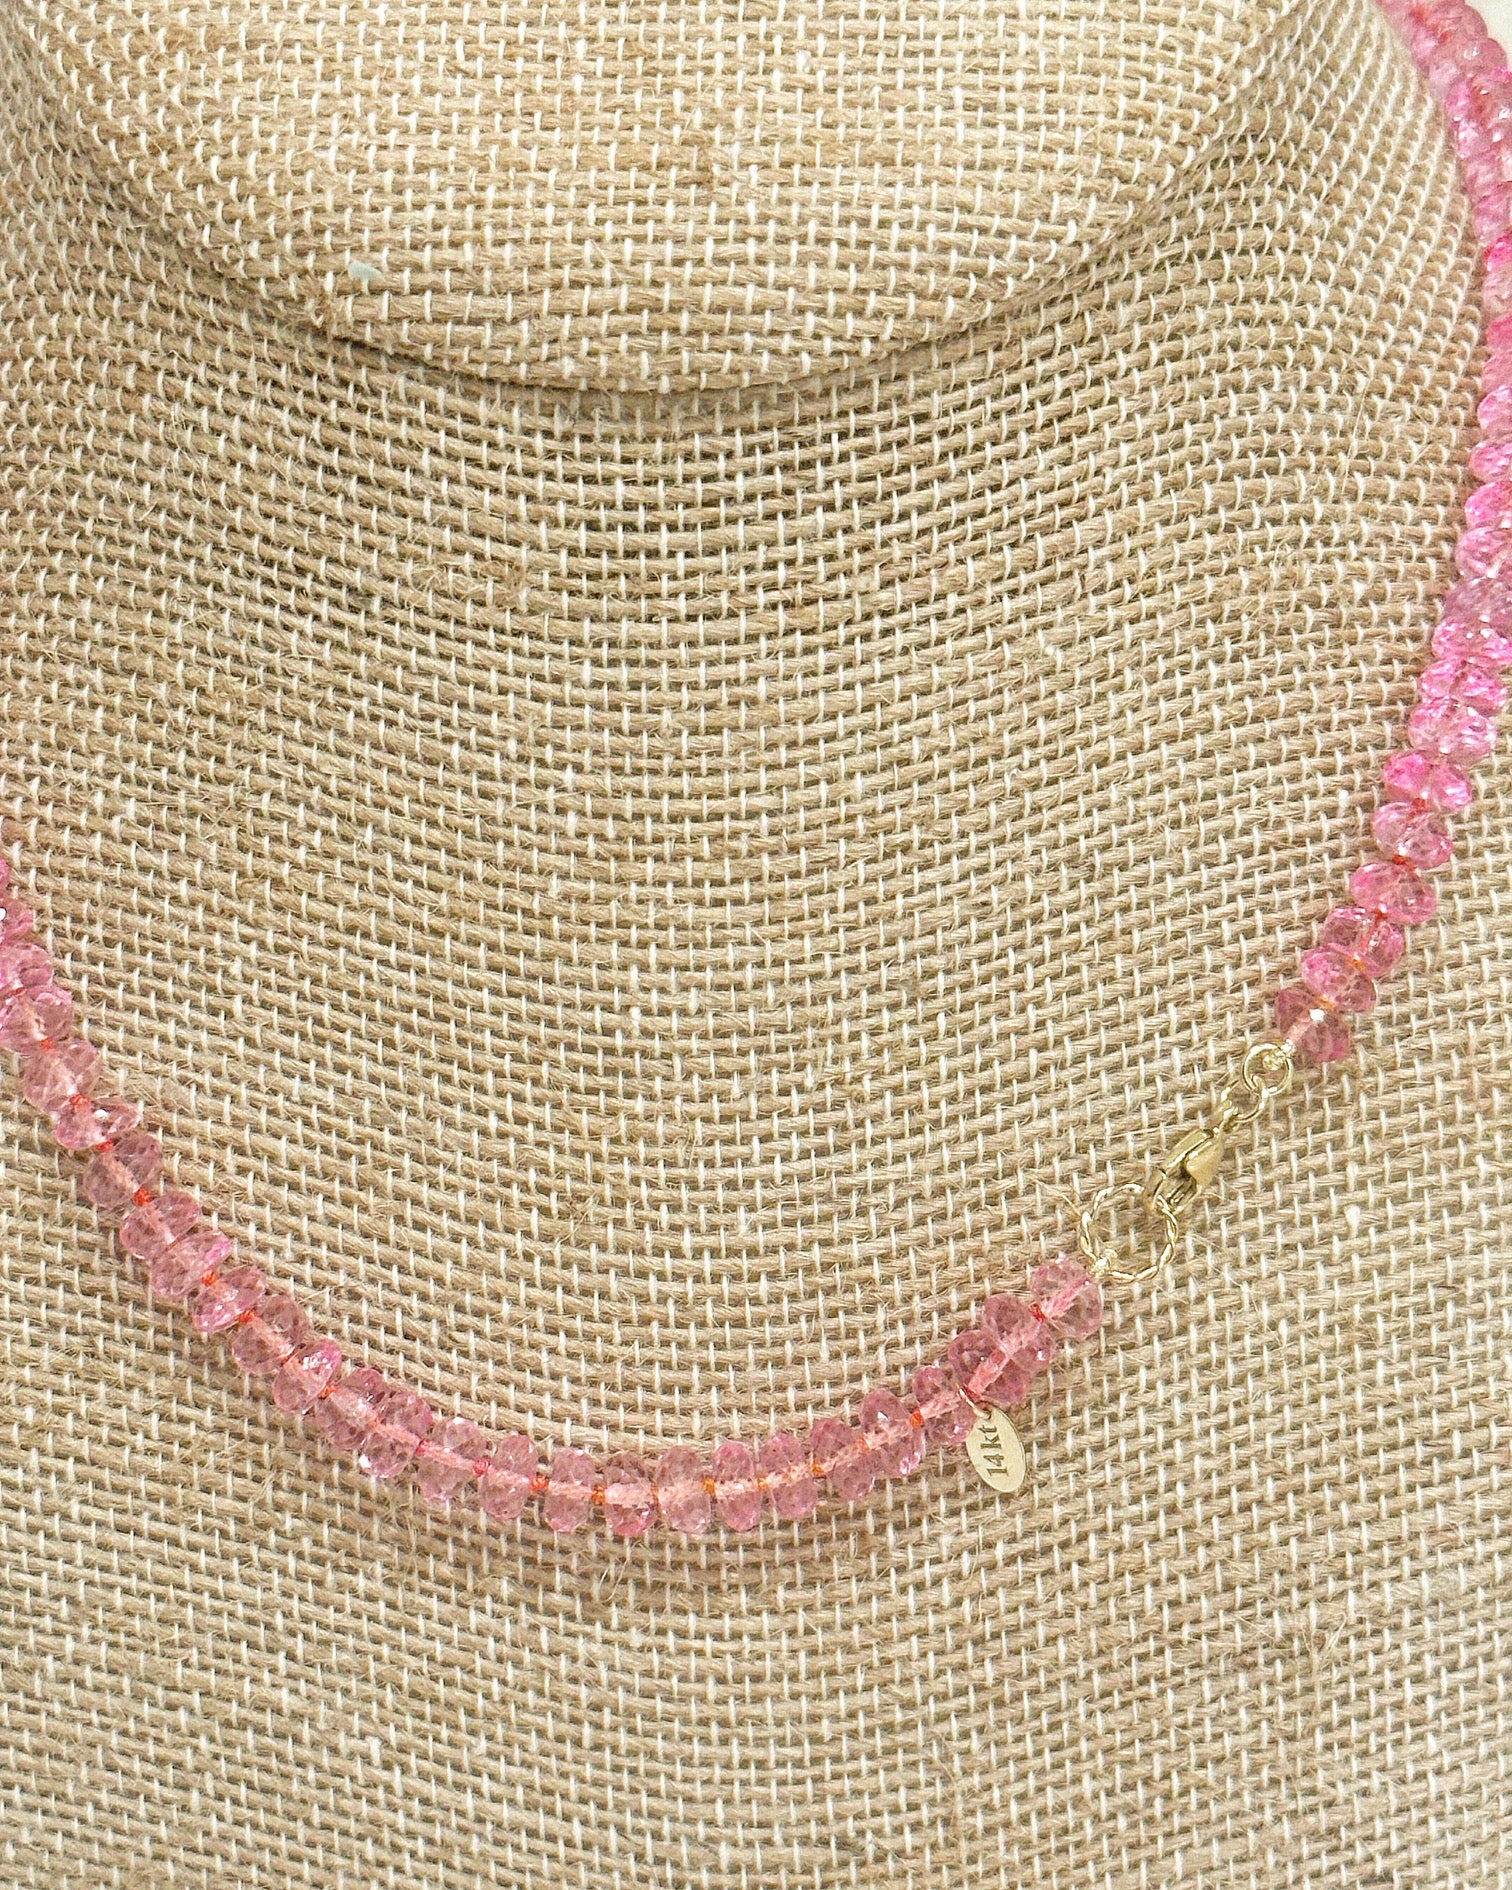 Pink Topaz Tennis Necklace